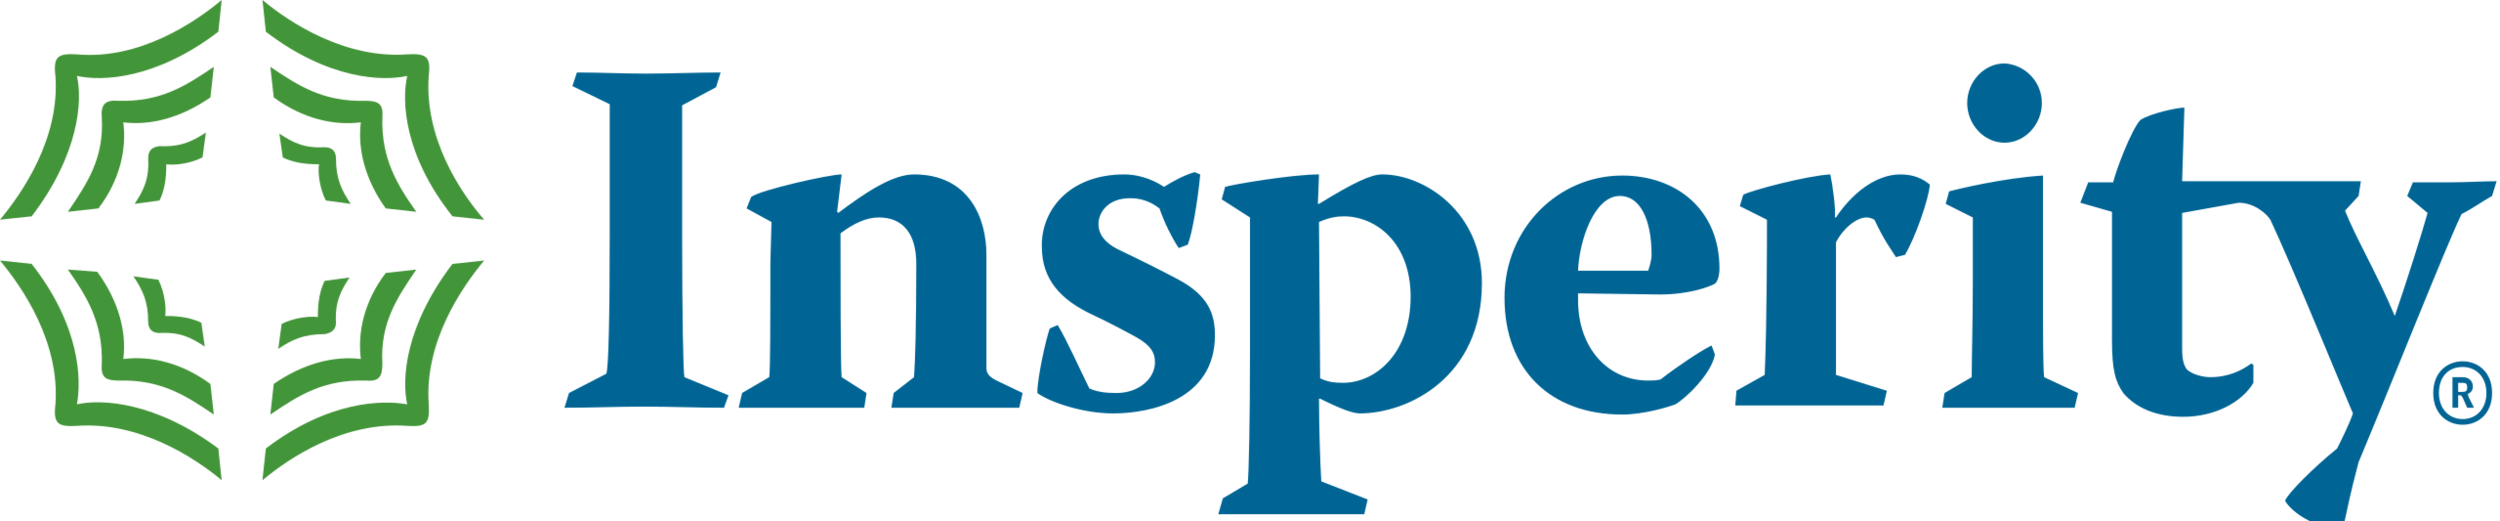 Insperity-logo.png